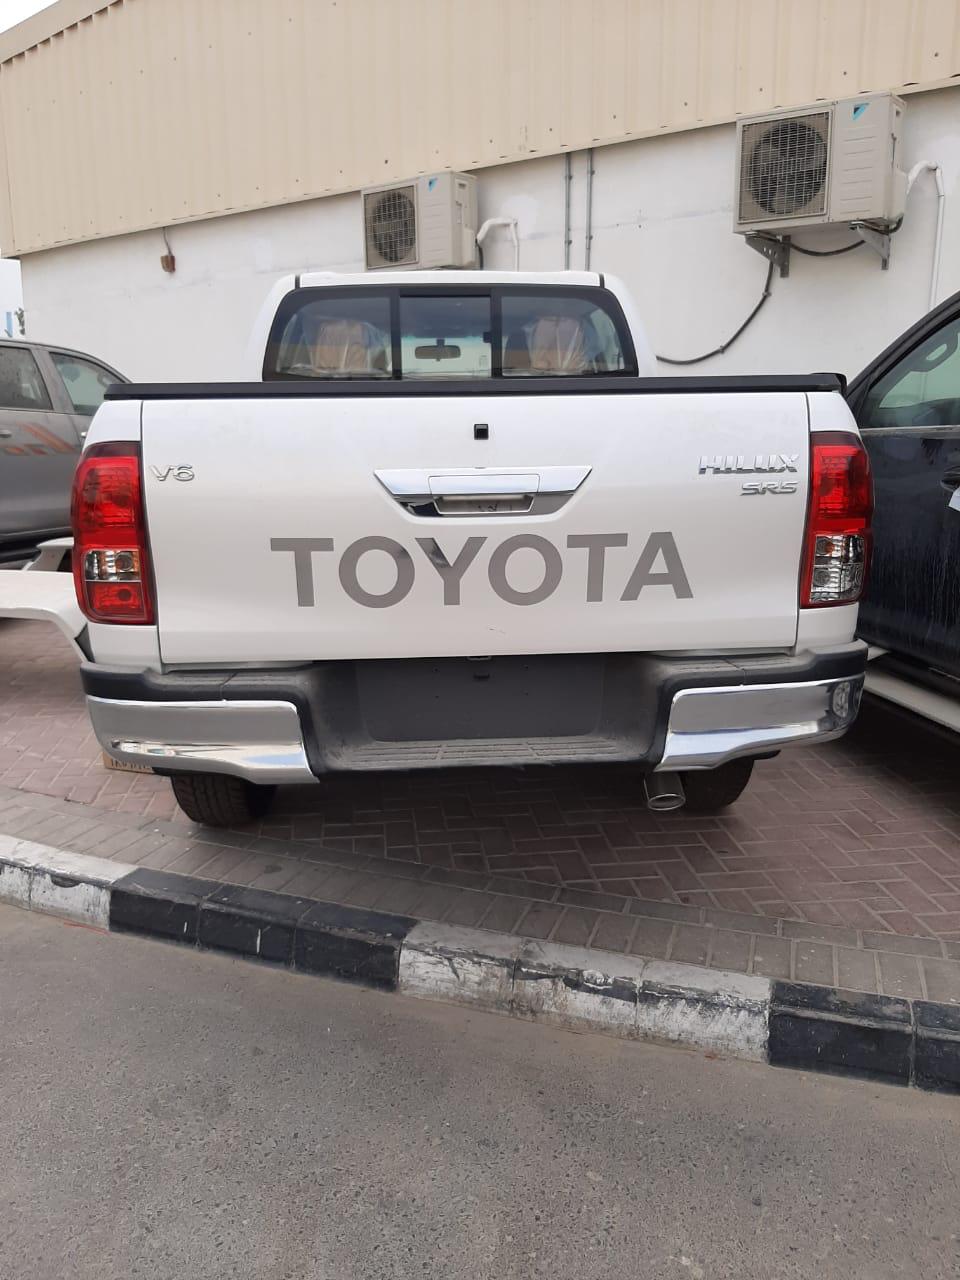 2020 Toyota Hilux TRD V6 Revolution price in Nigeria